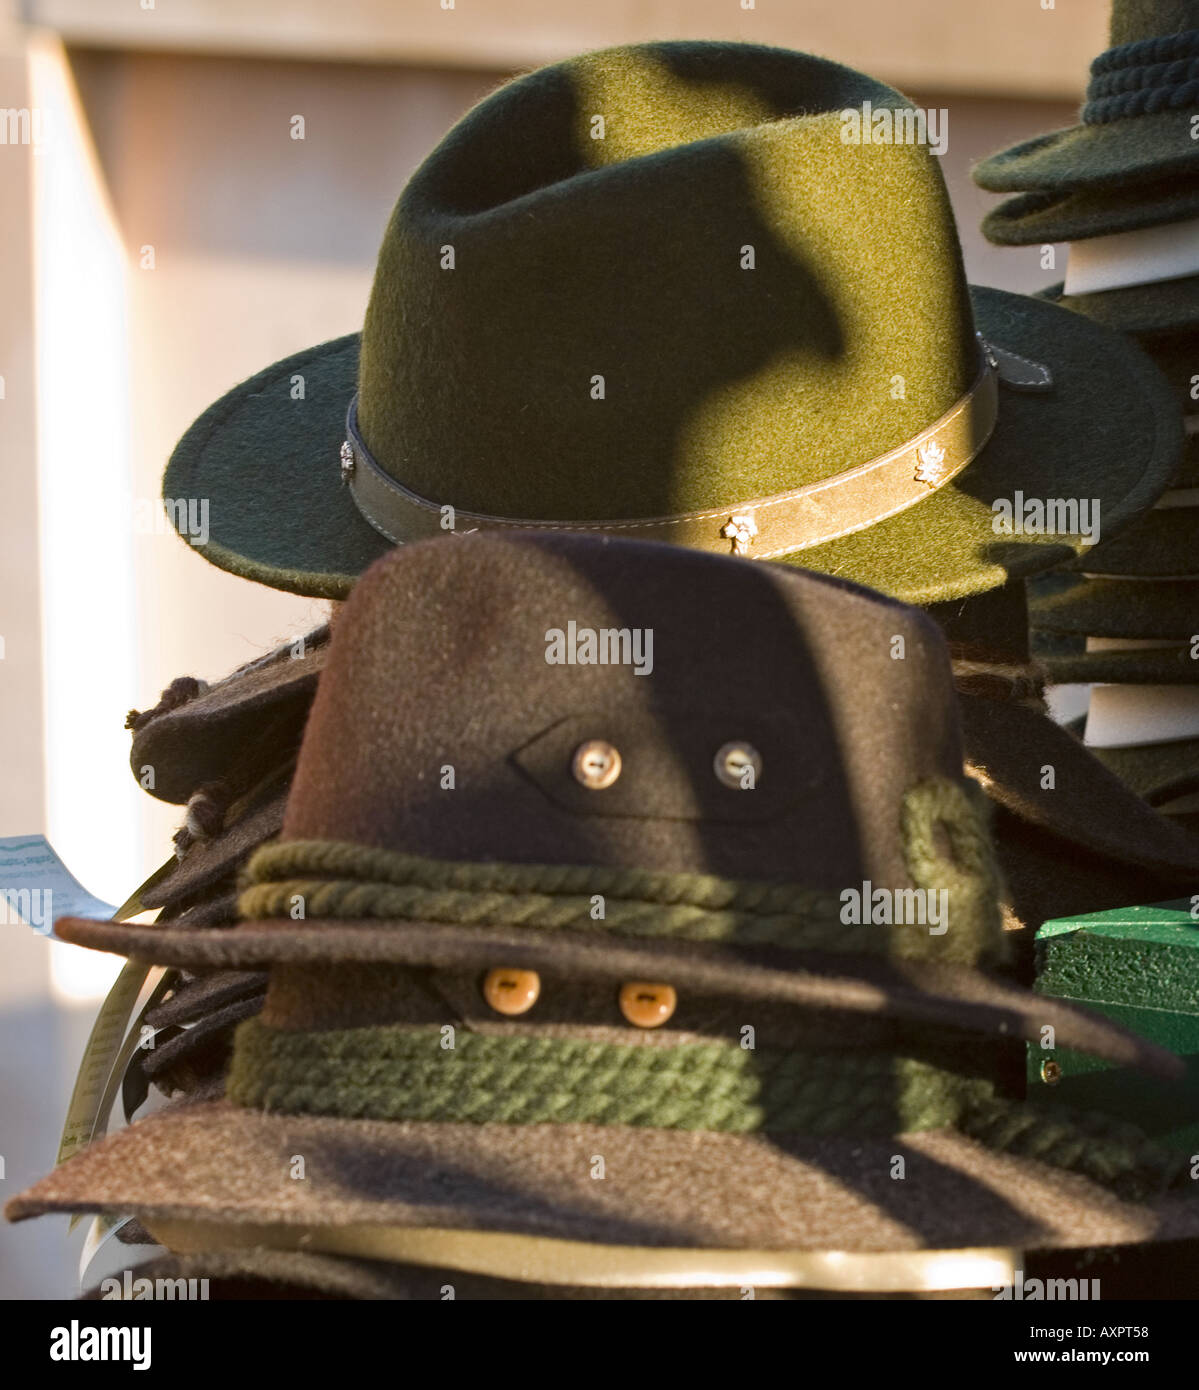 Cappelli tedeschi immagini e fotografie stock ad alta risoluzione - Alamy